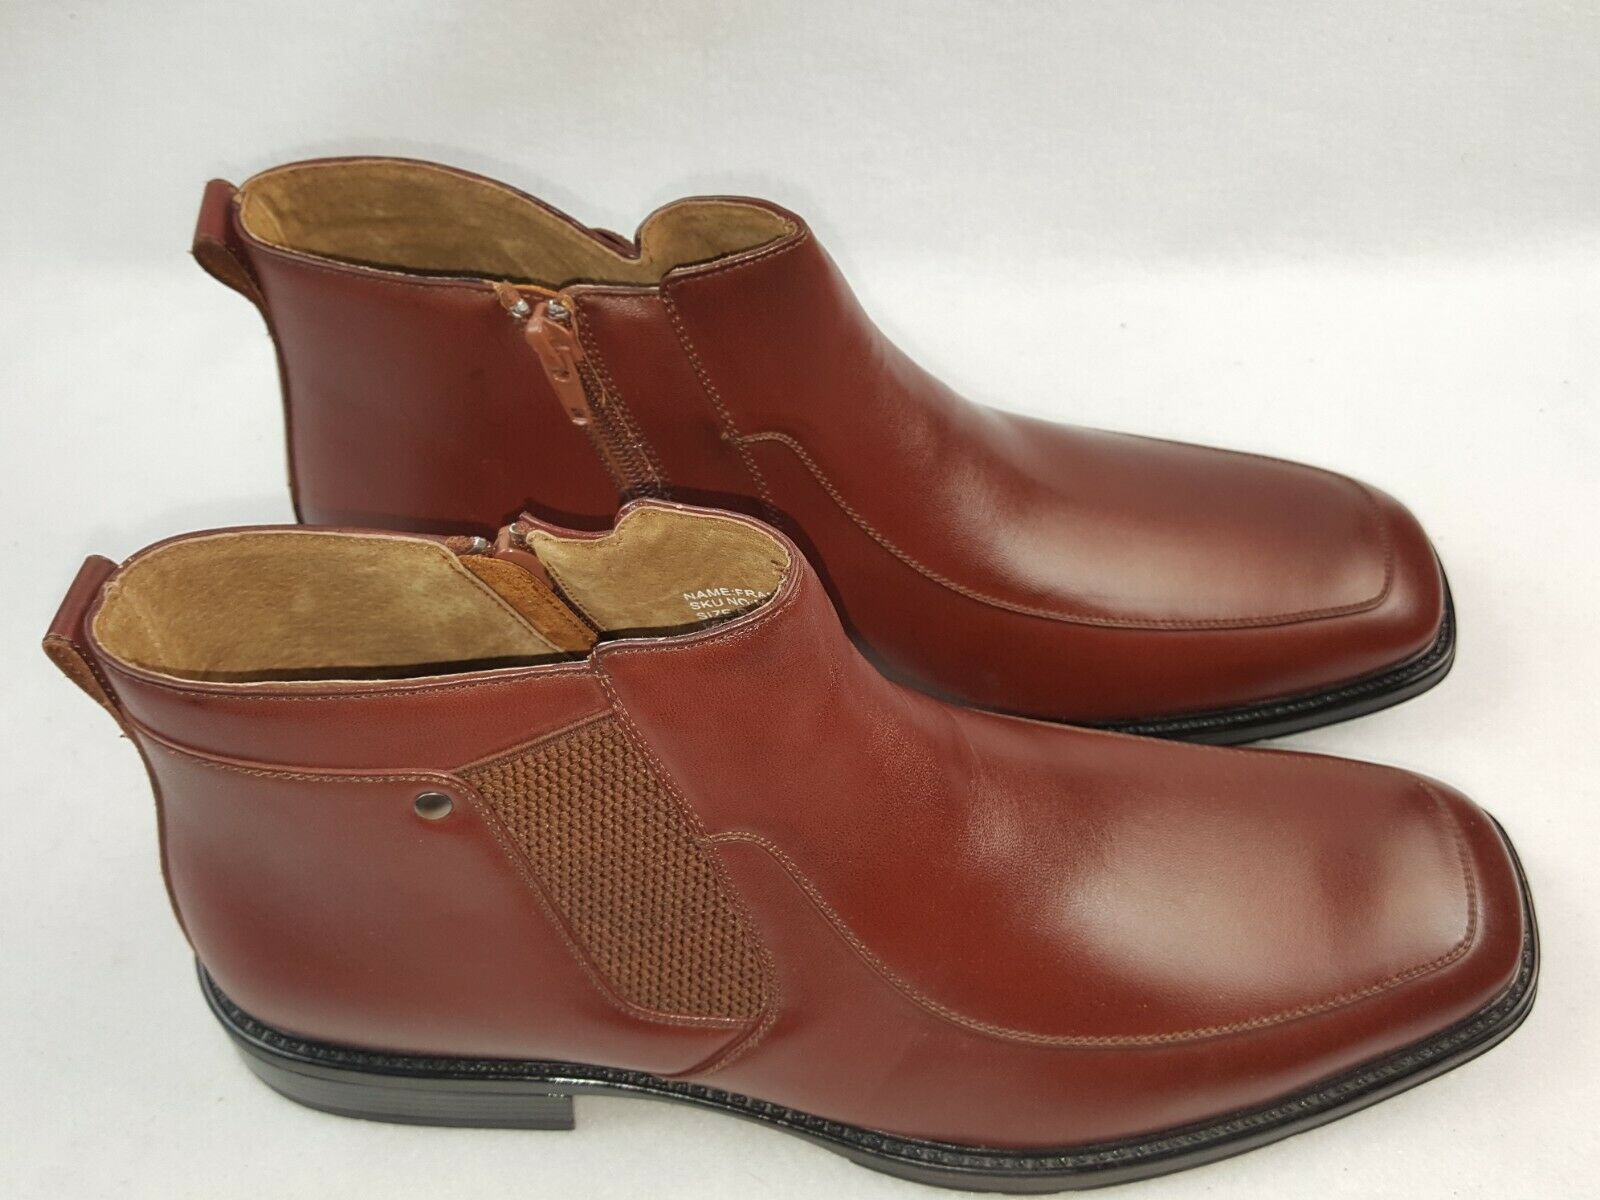 Delli Aldo "Francisco M-566" Men's Casual Ankle Boots Size 9 to 13